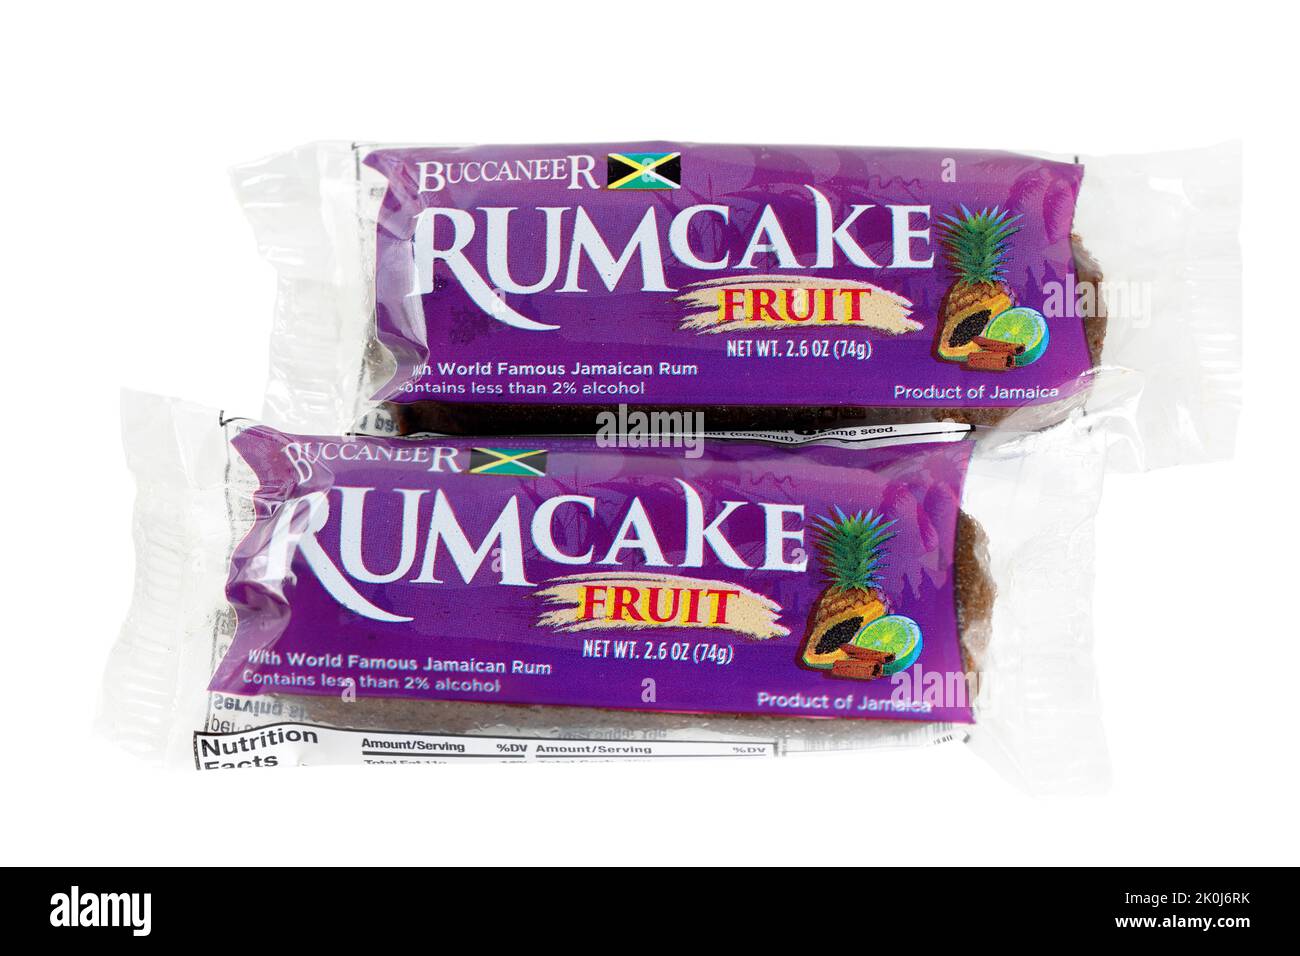 Zwei Stücke Buccaneer Rum Cake, Fruit Rumcake isoliert auf weißem Hintergrund. Ausschnitt zur Illustration und redaktionellen Verwendung Stockfoto